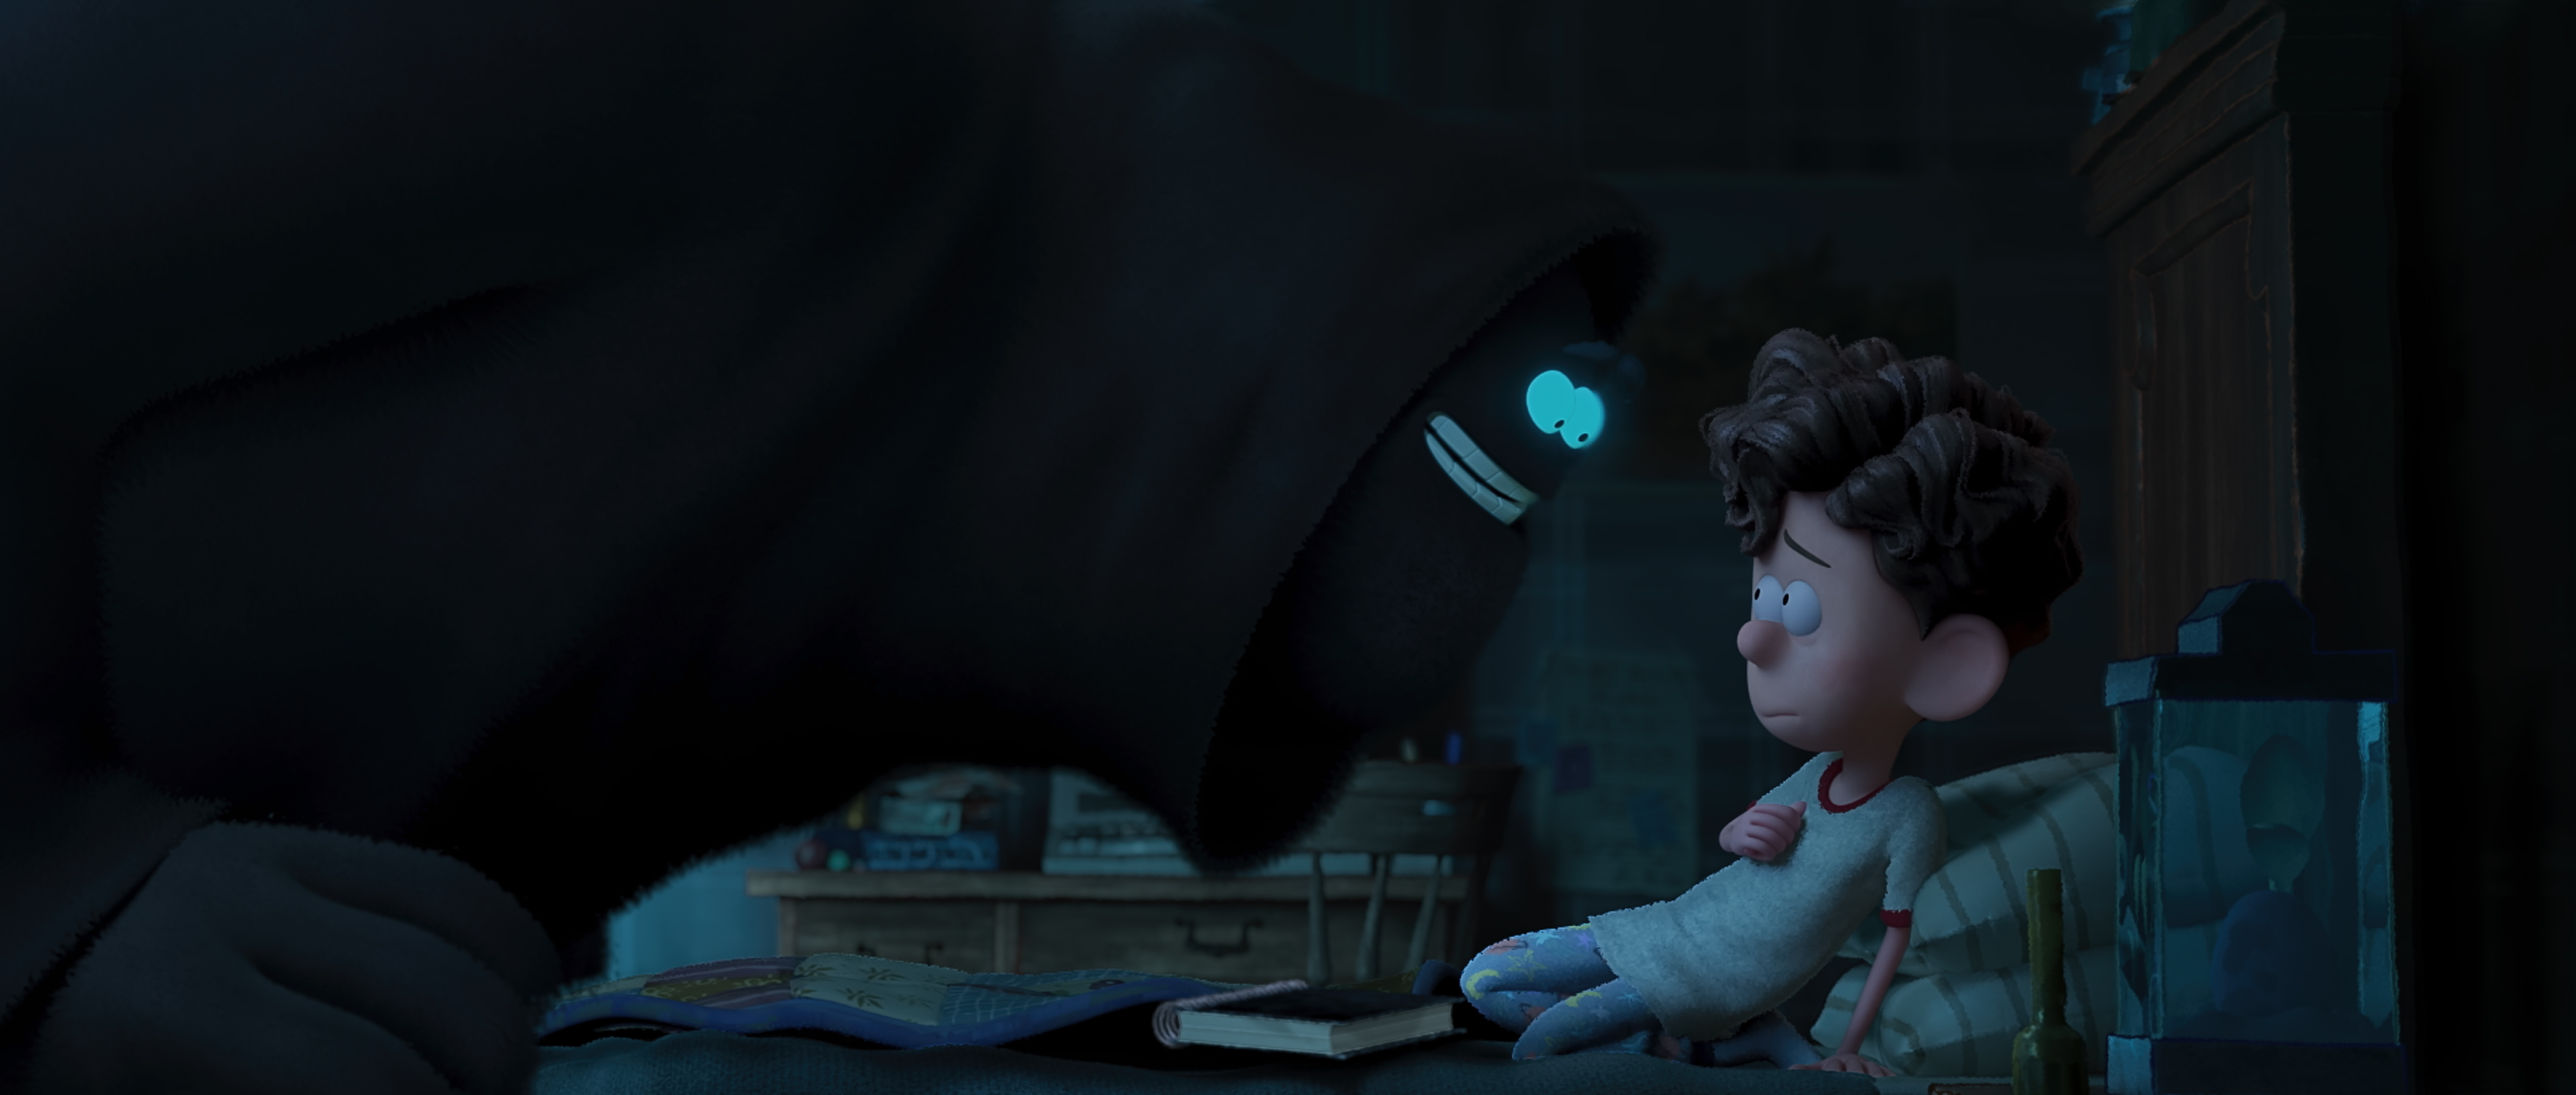 Анимационный фильм Netflix «Орион и тьма» Чарли Кауфмана — настоящая жемчужина.